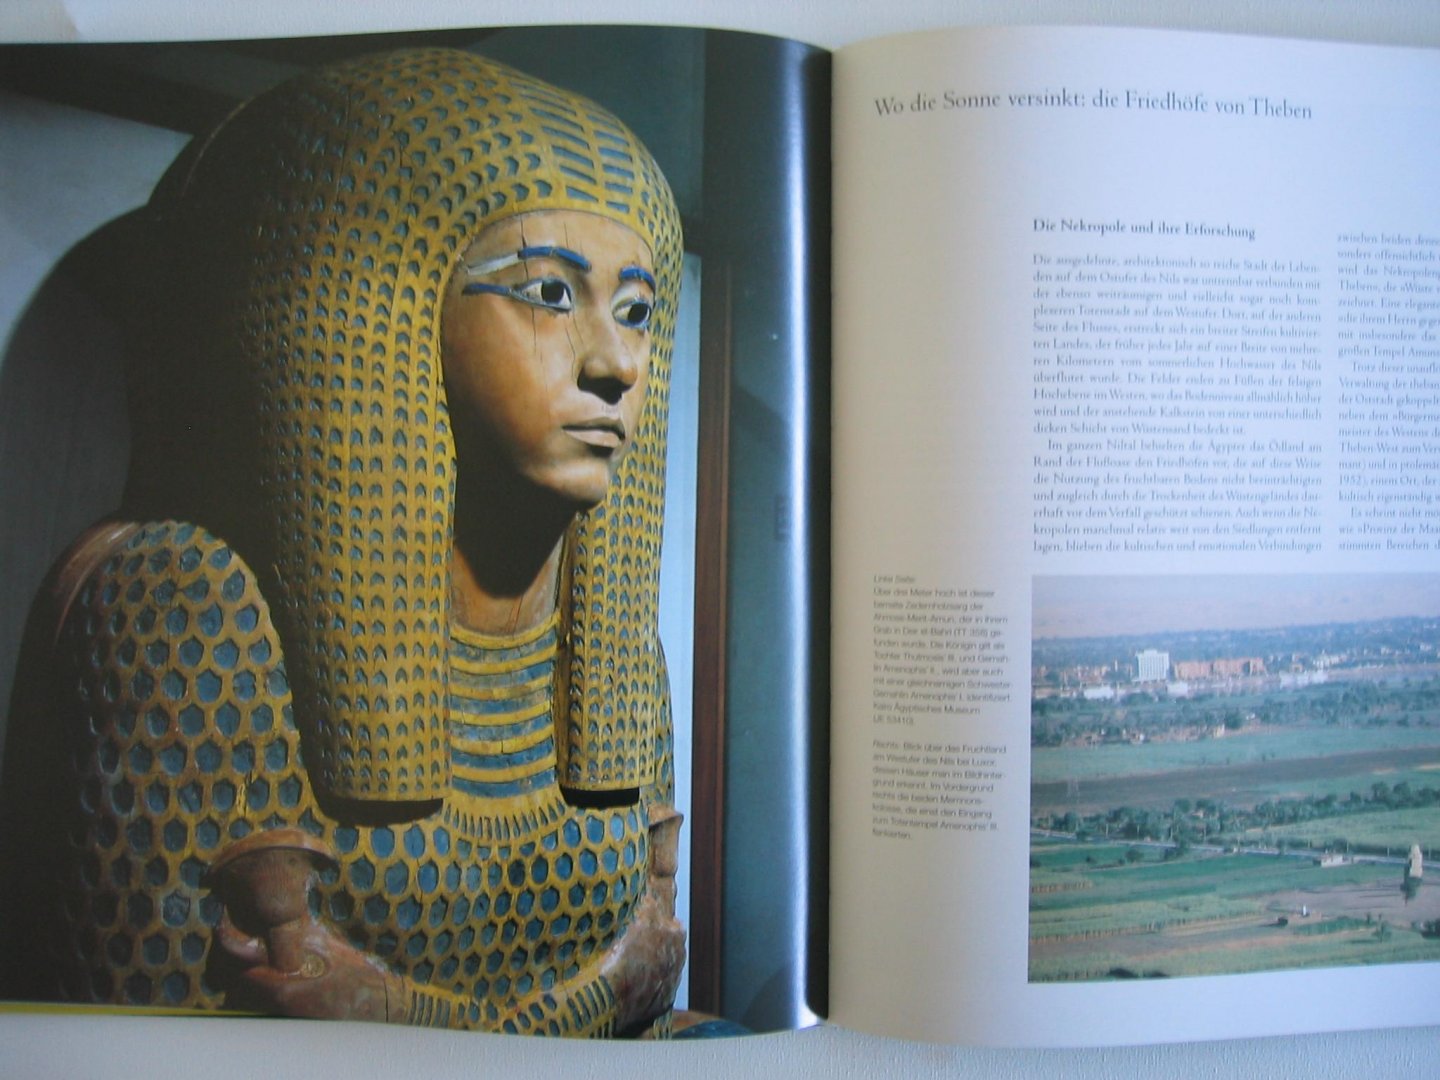 Donadoni, Sergio - Theben, Heilige stadt der Pharaonen. Stad van de Farao's